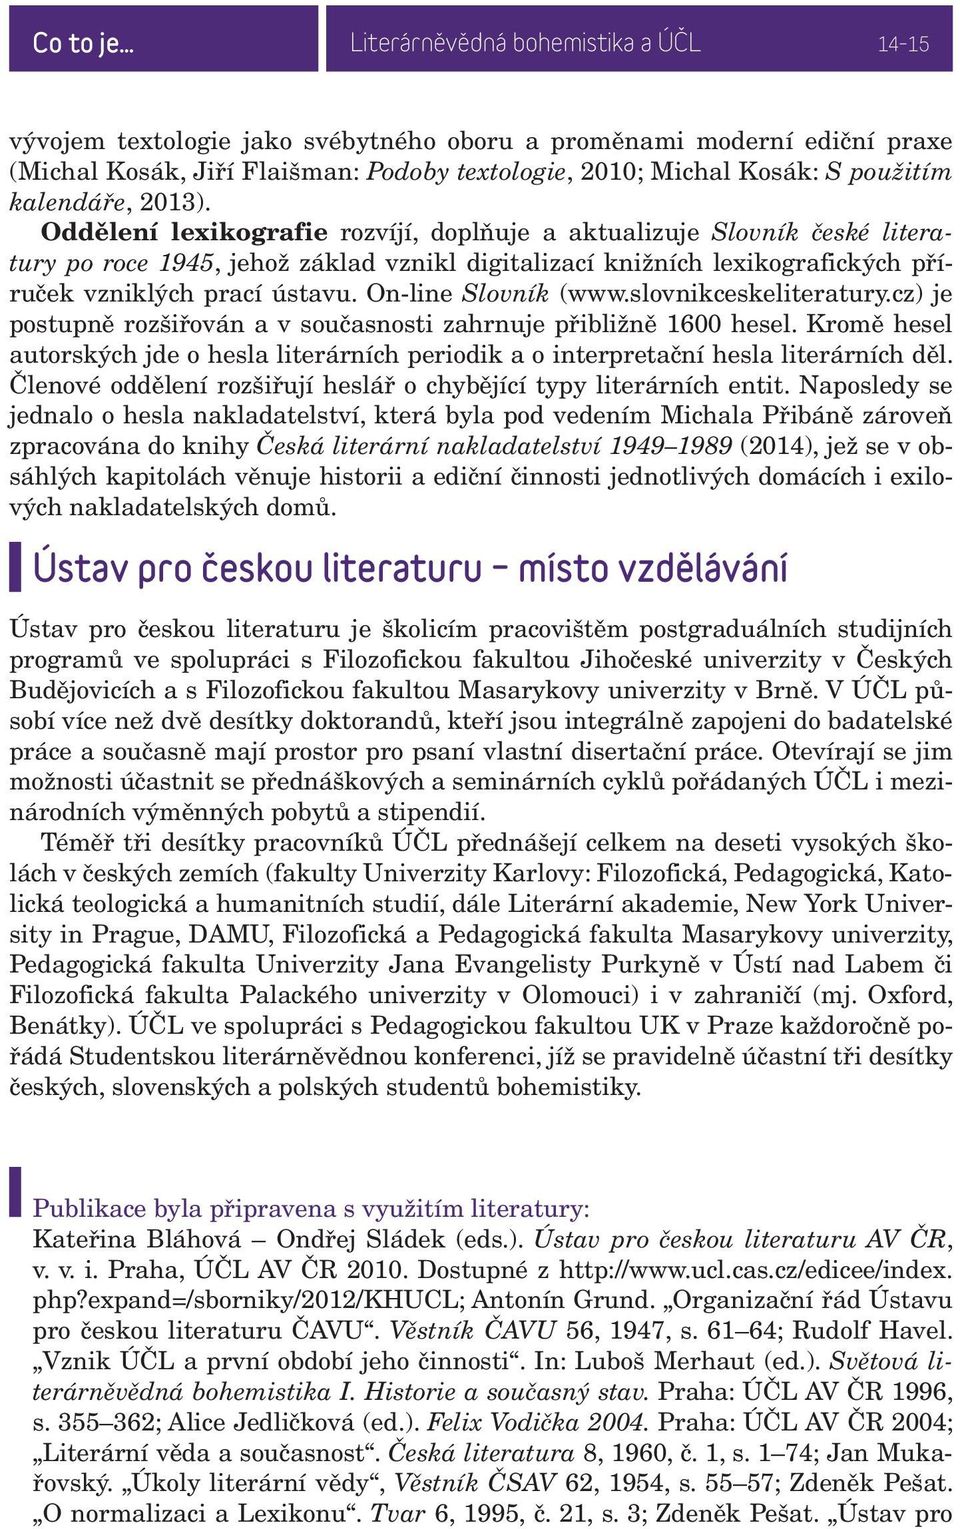 Oddělení lexikografie rozvíjí, doplňuje a aktualizuje Slovník české literatury po roce 1945, jehož základ vznikl digitalizací knižních lexikografických příruček vzniklých prací ústavu.